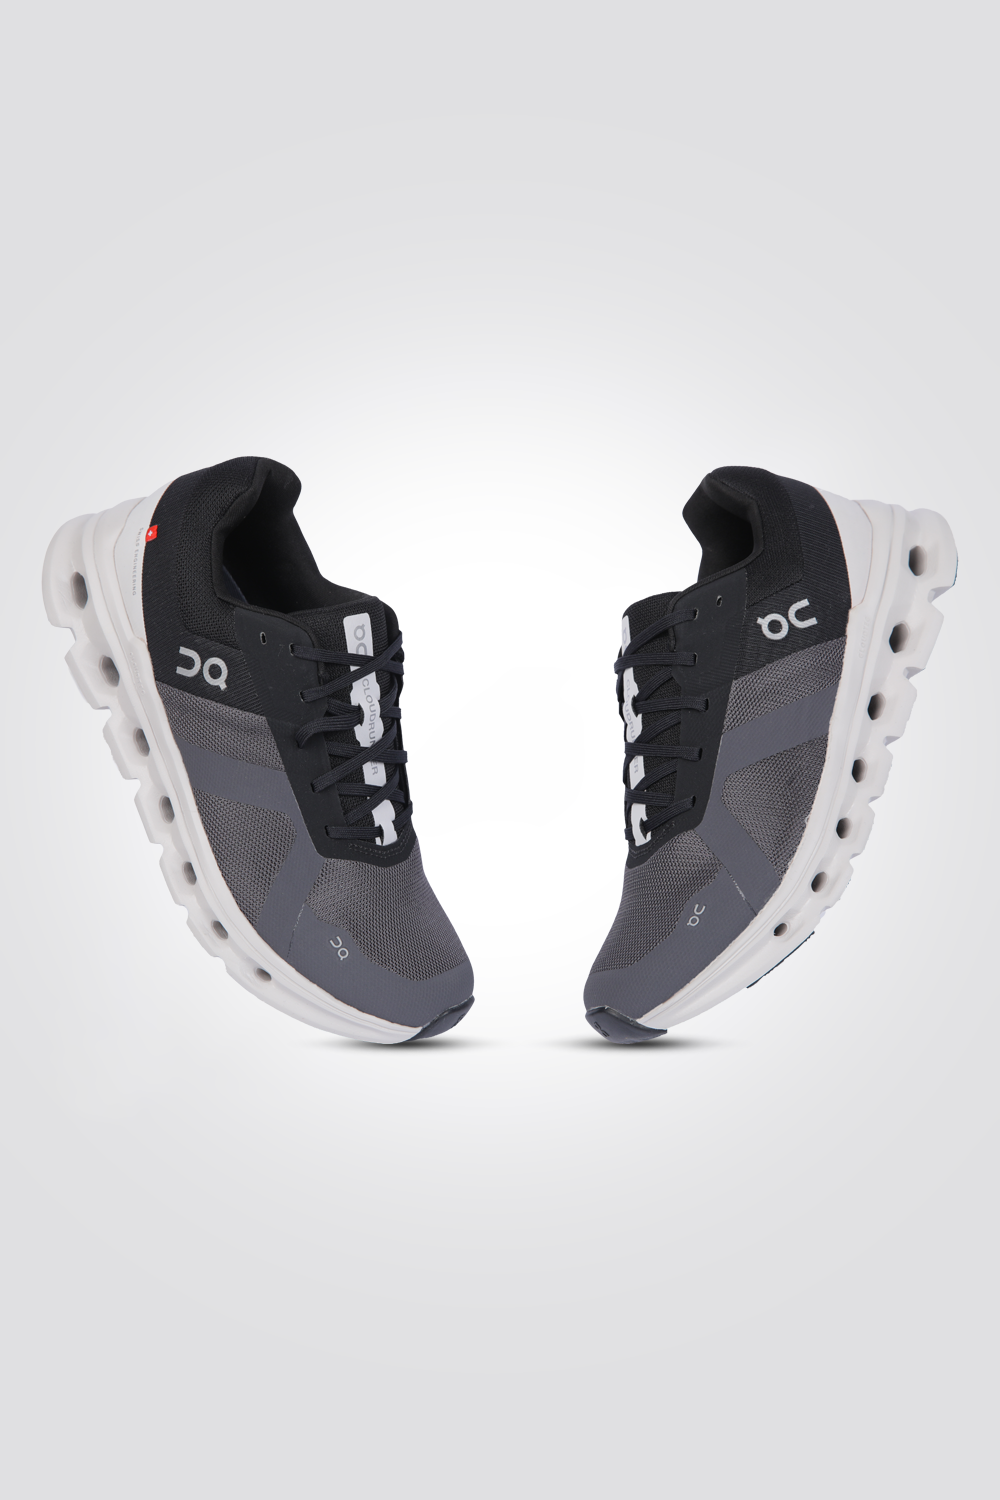 נעלי ספורט לגברים Cloudrunner בצבע שחור ואפור